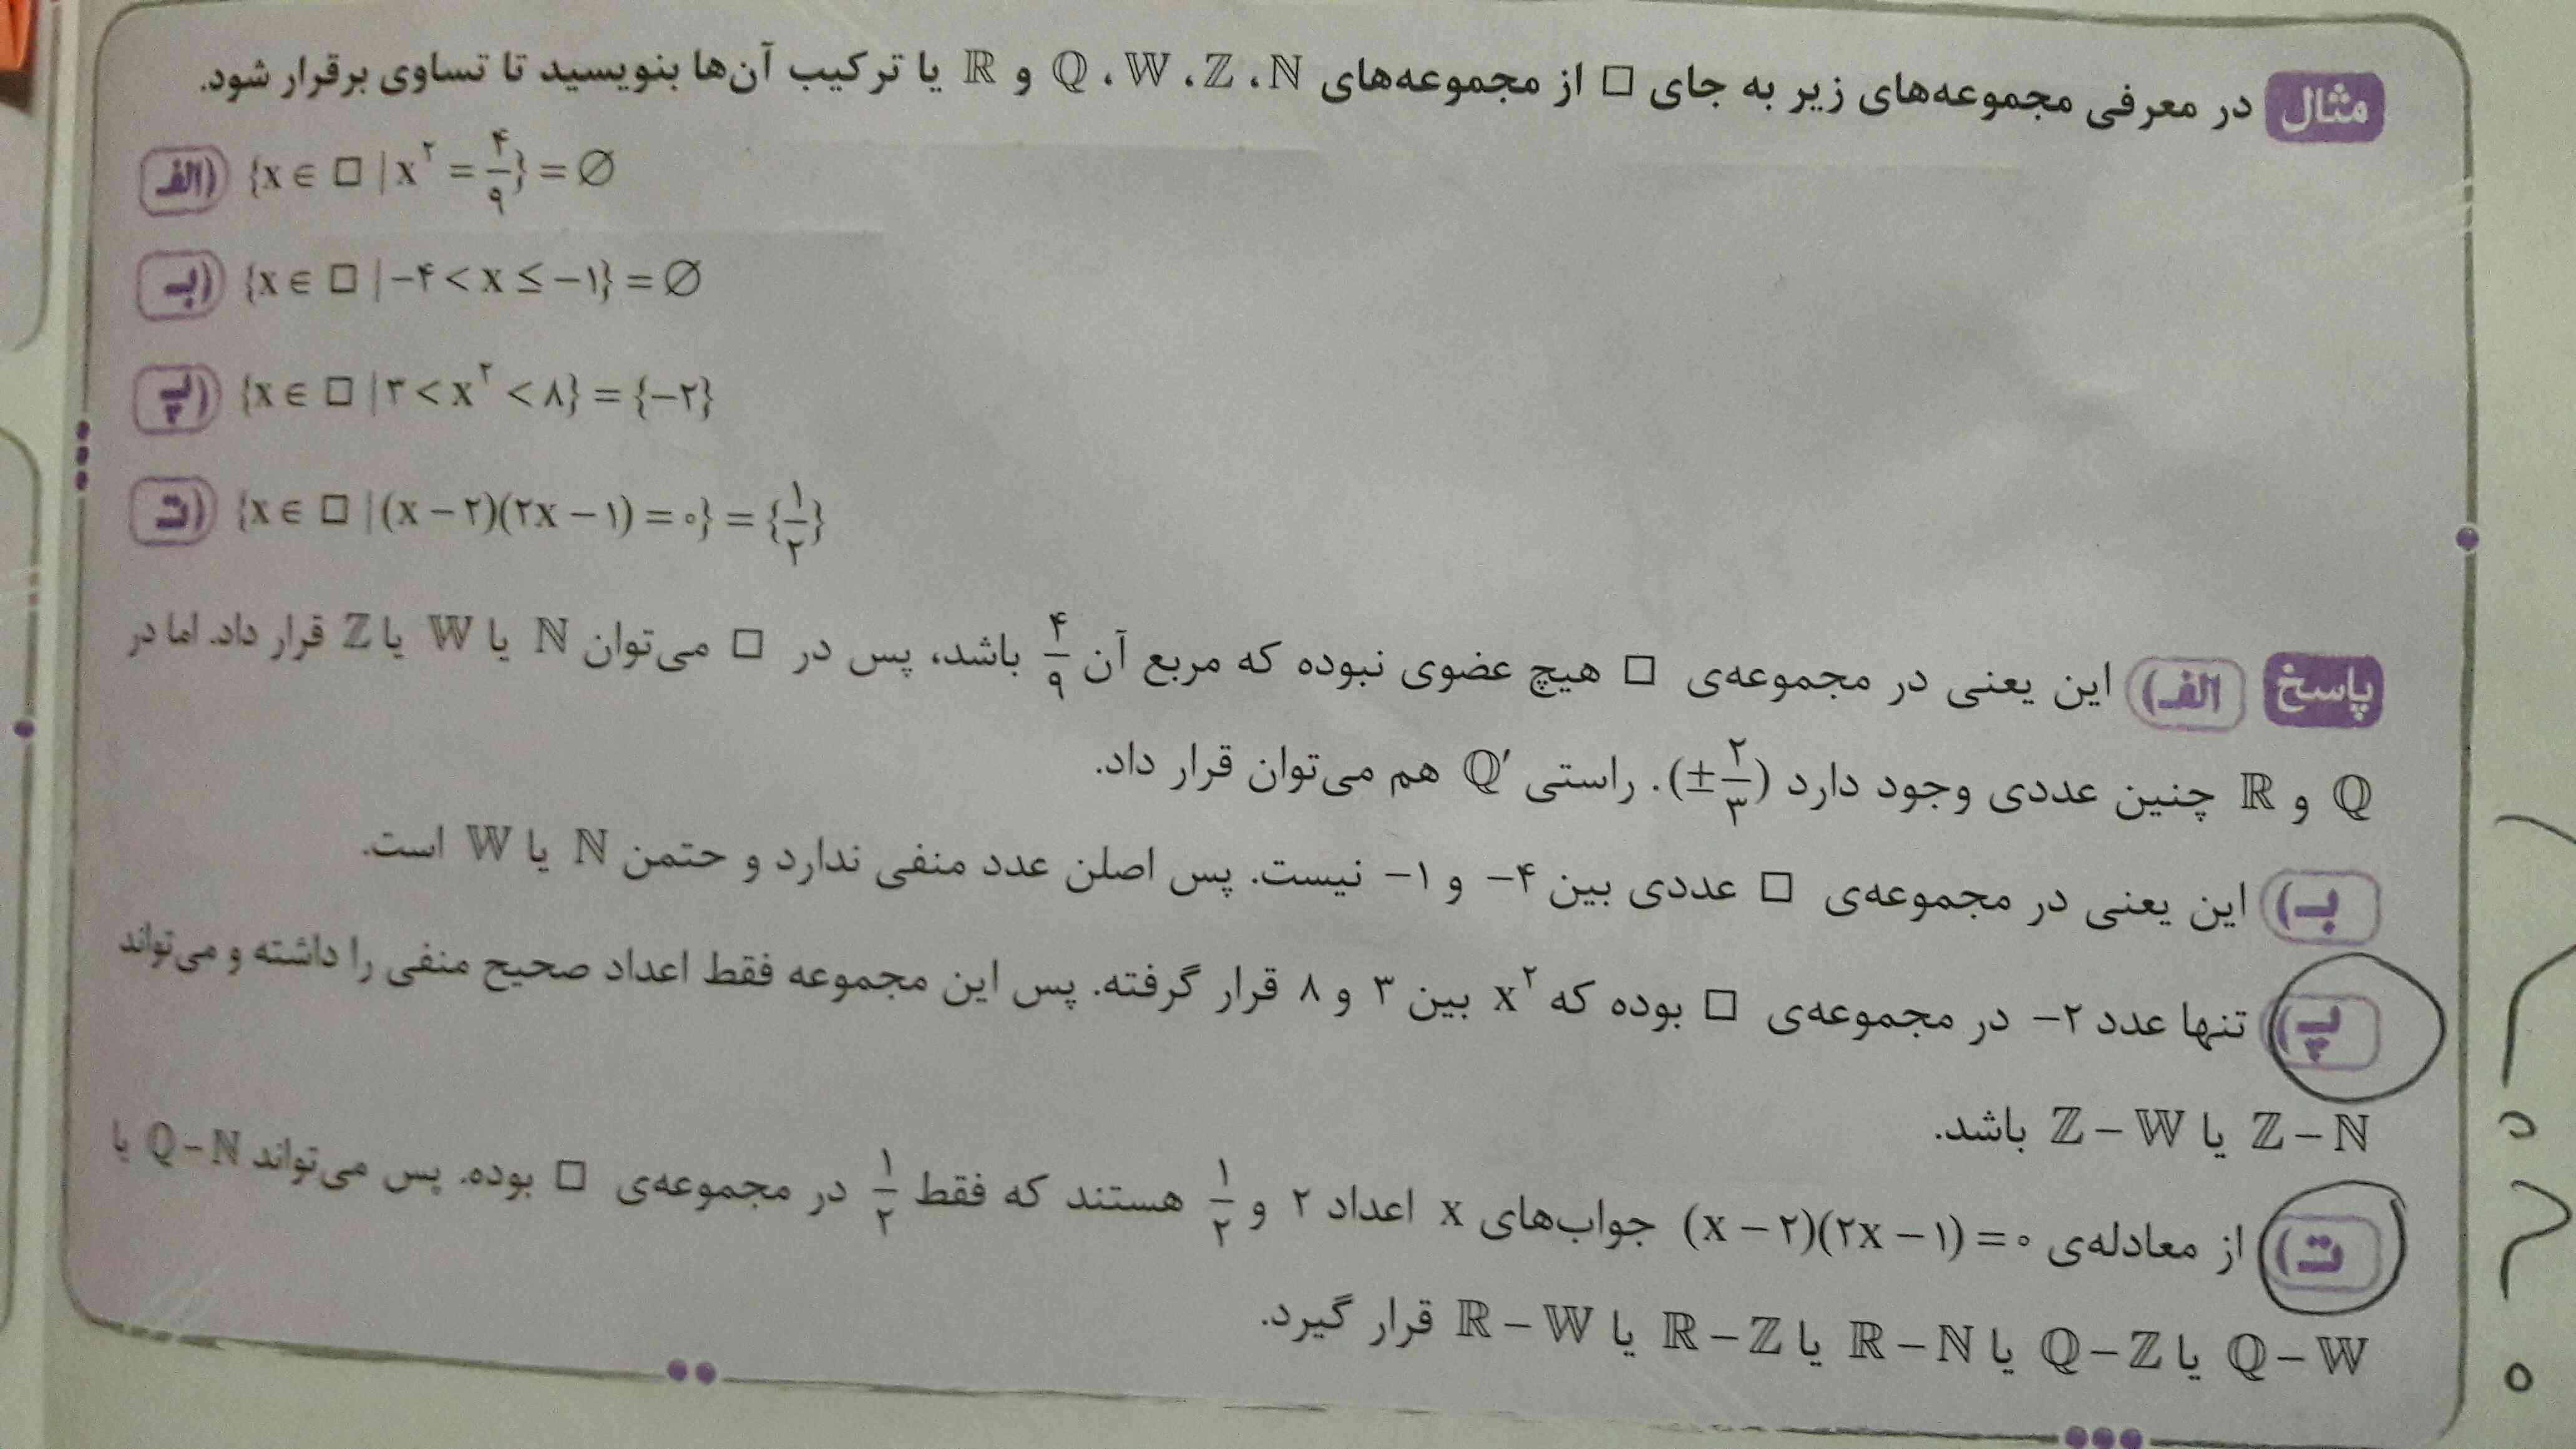 گزینه پ : مگه x به توان ۲ برسه مثبت نمیشه پس اگه ۲- رو به توان ۲ برسونیم باید بشه ۴ و ۴ هم یه عدد طبیعی یا حسابی یا صحیح هست. پس چرا پ گفته Z-N یا Z-W ؟؟؟

گزینه ت روهم نفهمیدم یجا میگه R_N خب در این صورت یعنی حسابی و صحیح ( ۰ و منفی ها) هم حسابه یجا هم میگه R-Z چرا؟؟؟؟